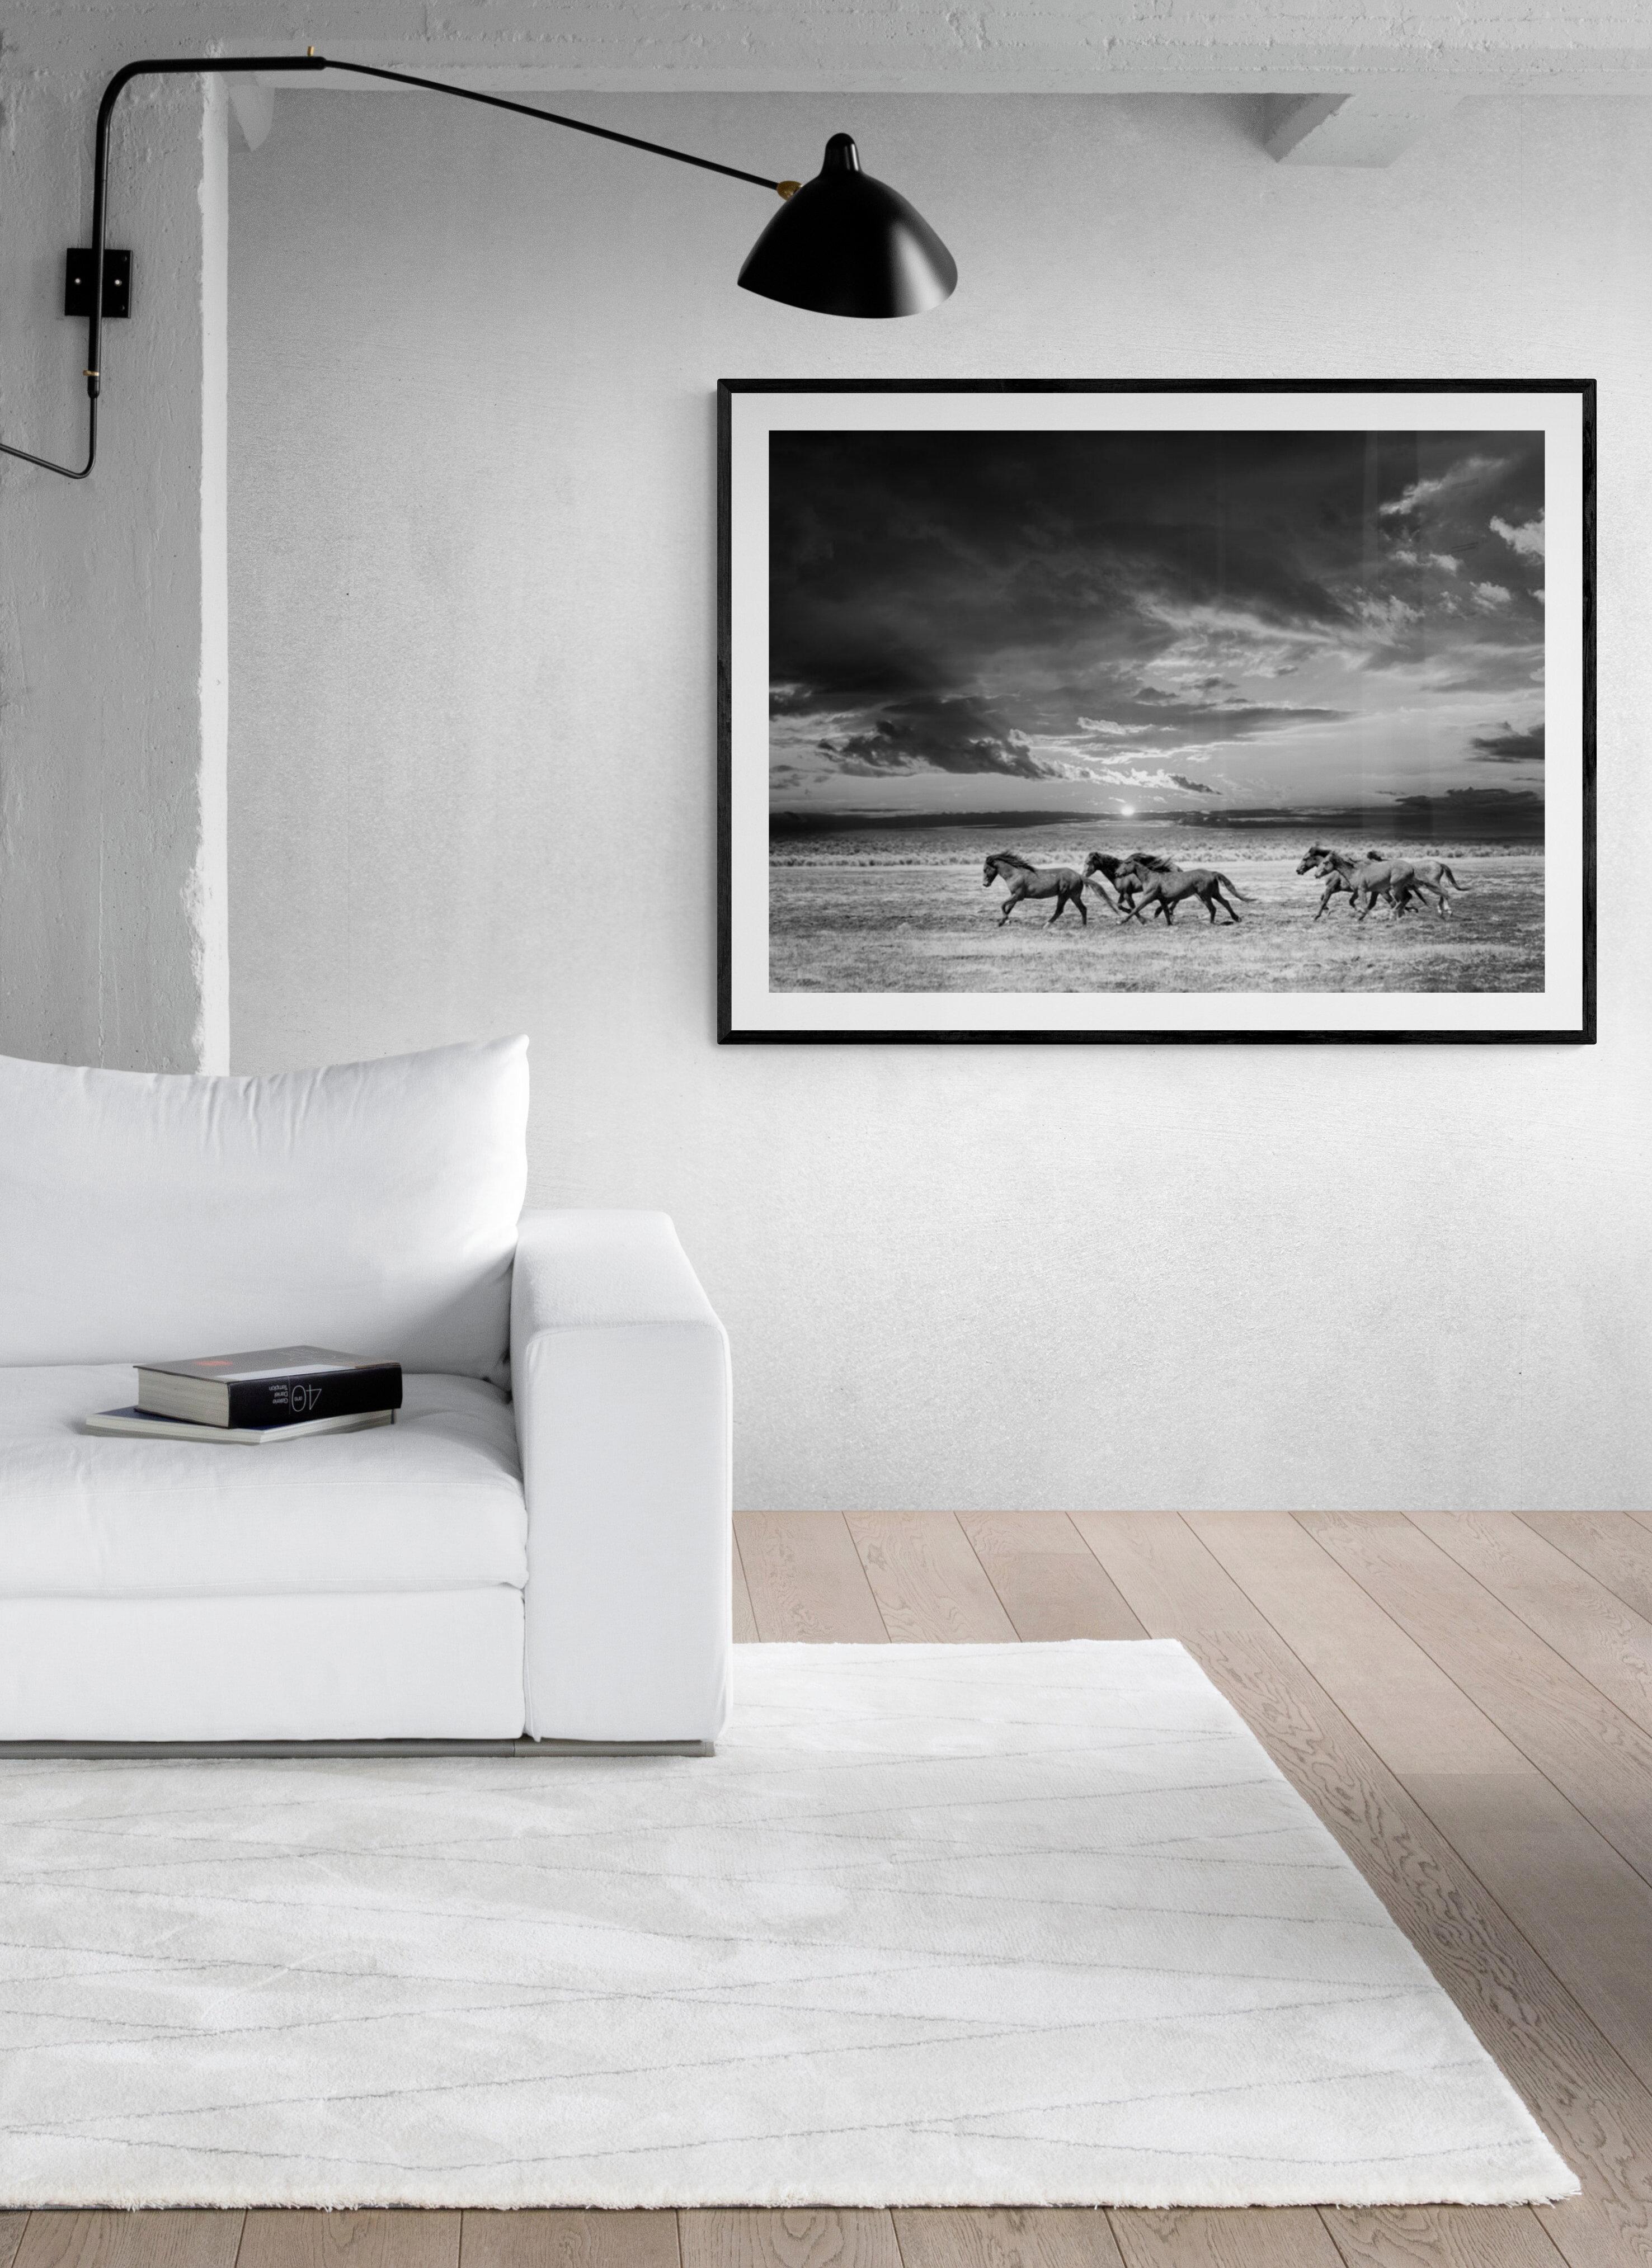 Chasing the Light – 28x40 Schwarz-Weiß-Fotografie mit Wildpferden, Senf, signiert 1